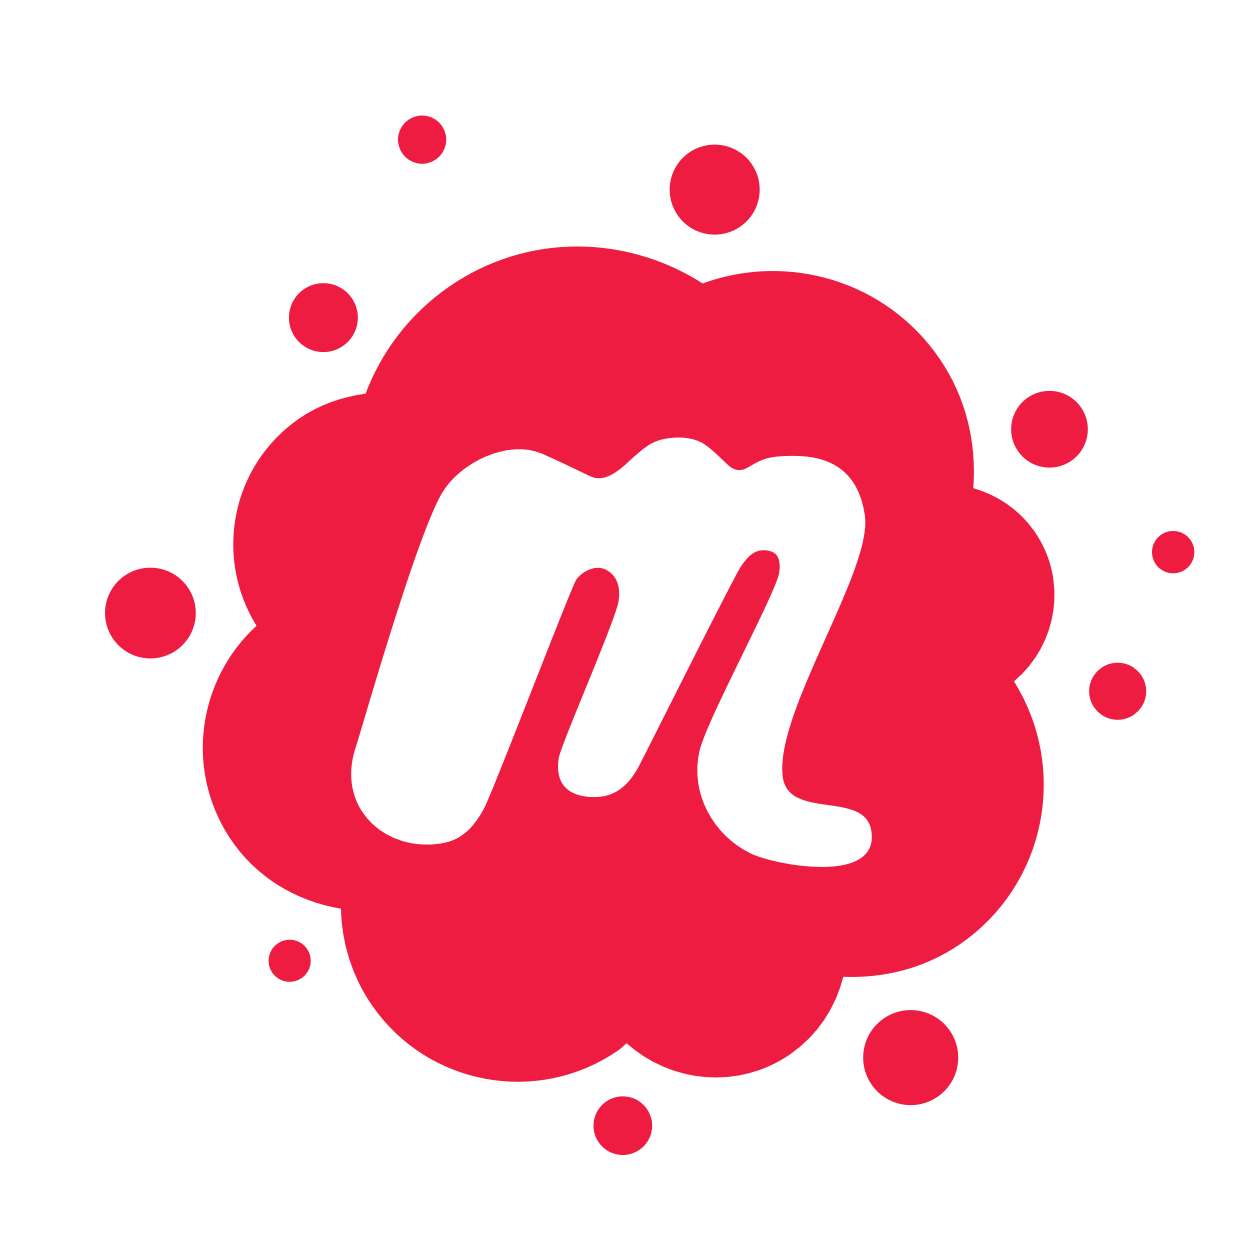 Meetup logo free icon